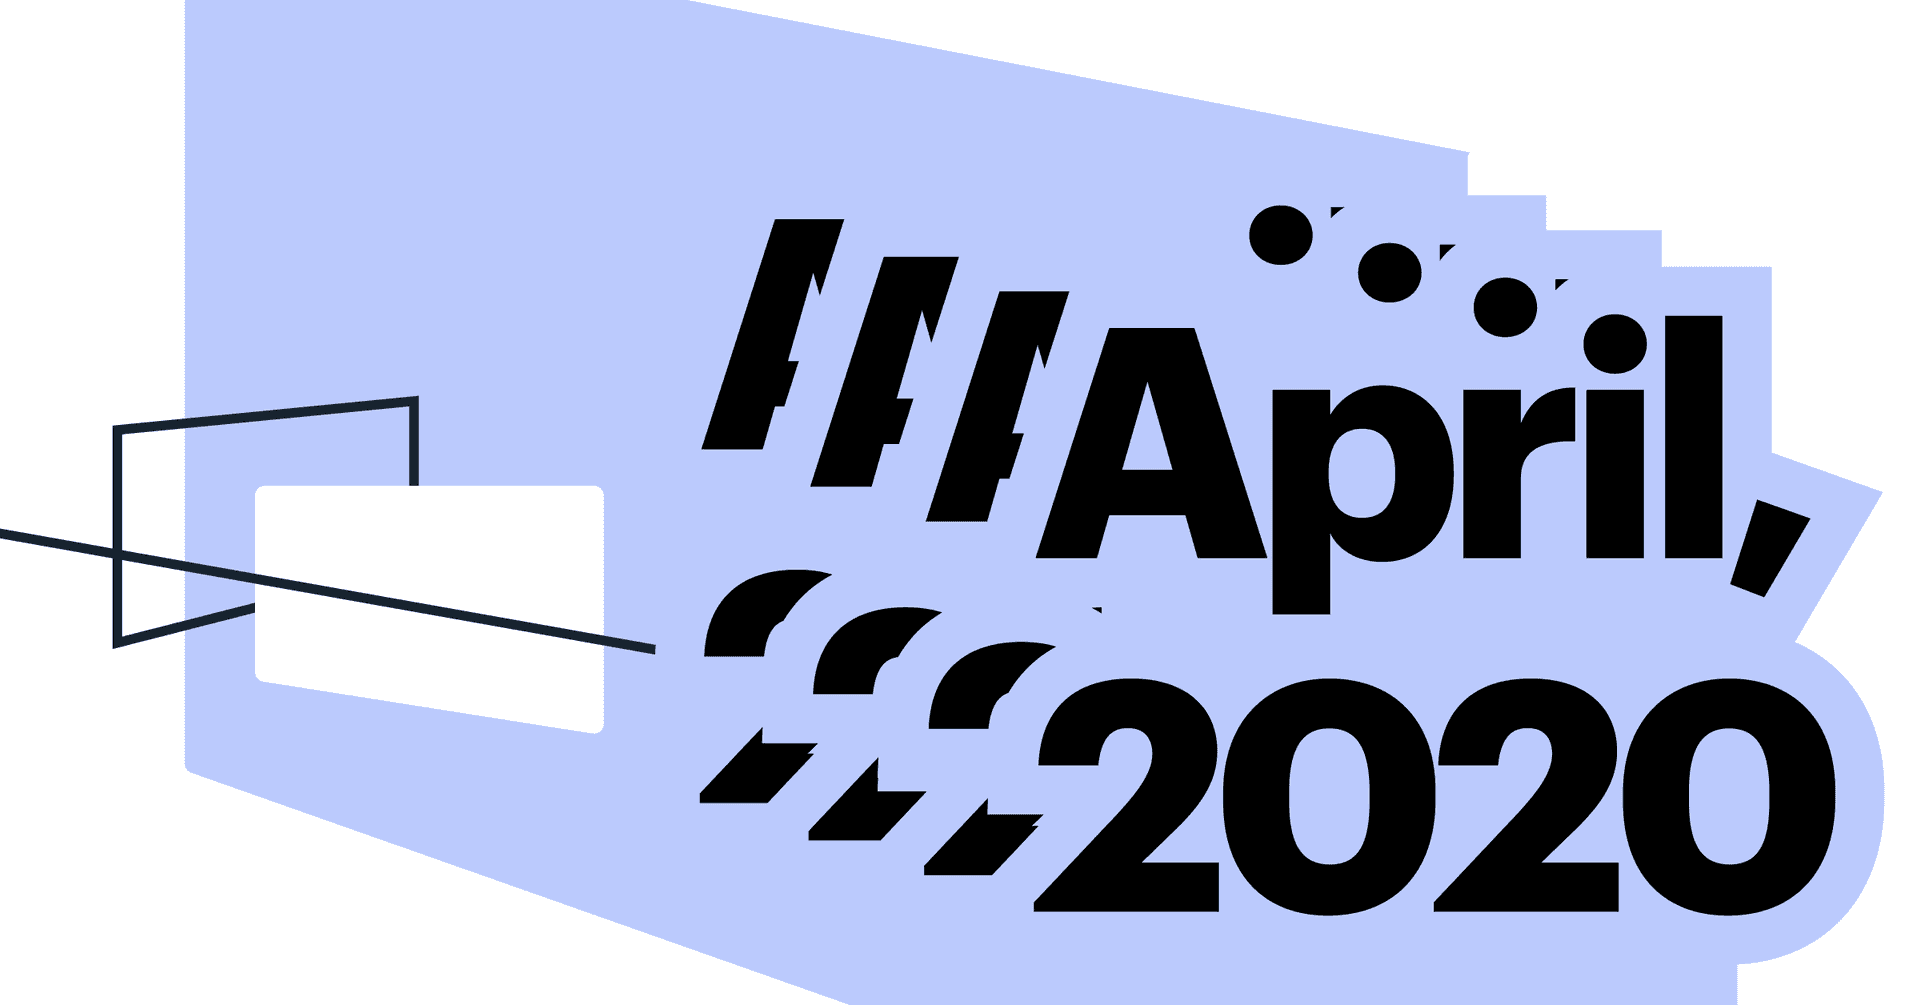 #21. Public Launch in April 2020